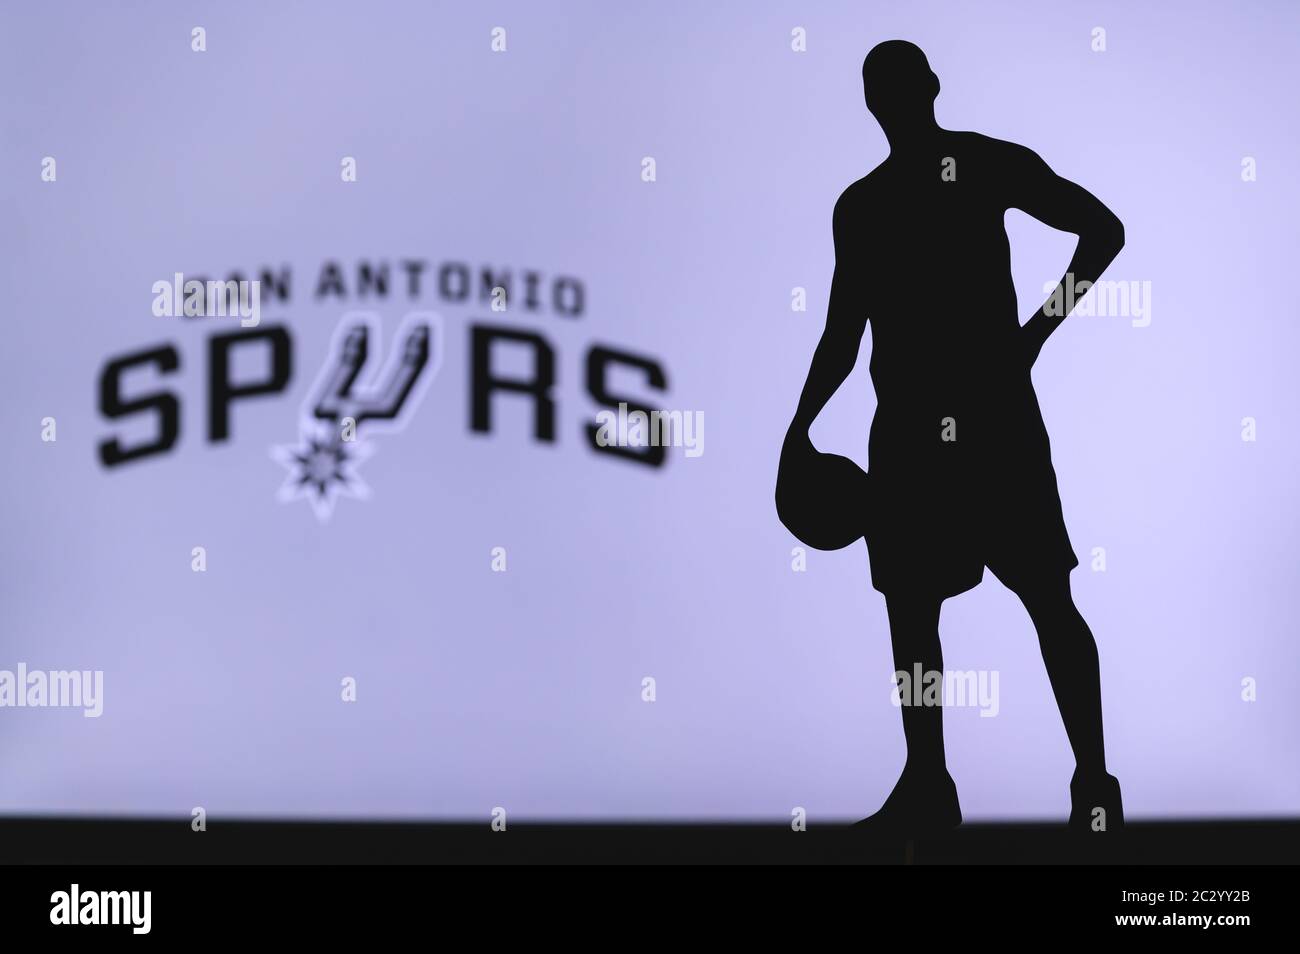 NEW YORK, USA, 18 GIU 2020: San Antonio Spurs logo di club di basket professionale in lega americana. Silhouette del giocatore di basket in primo piano. SpO Foto Stock